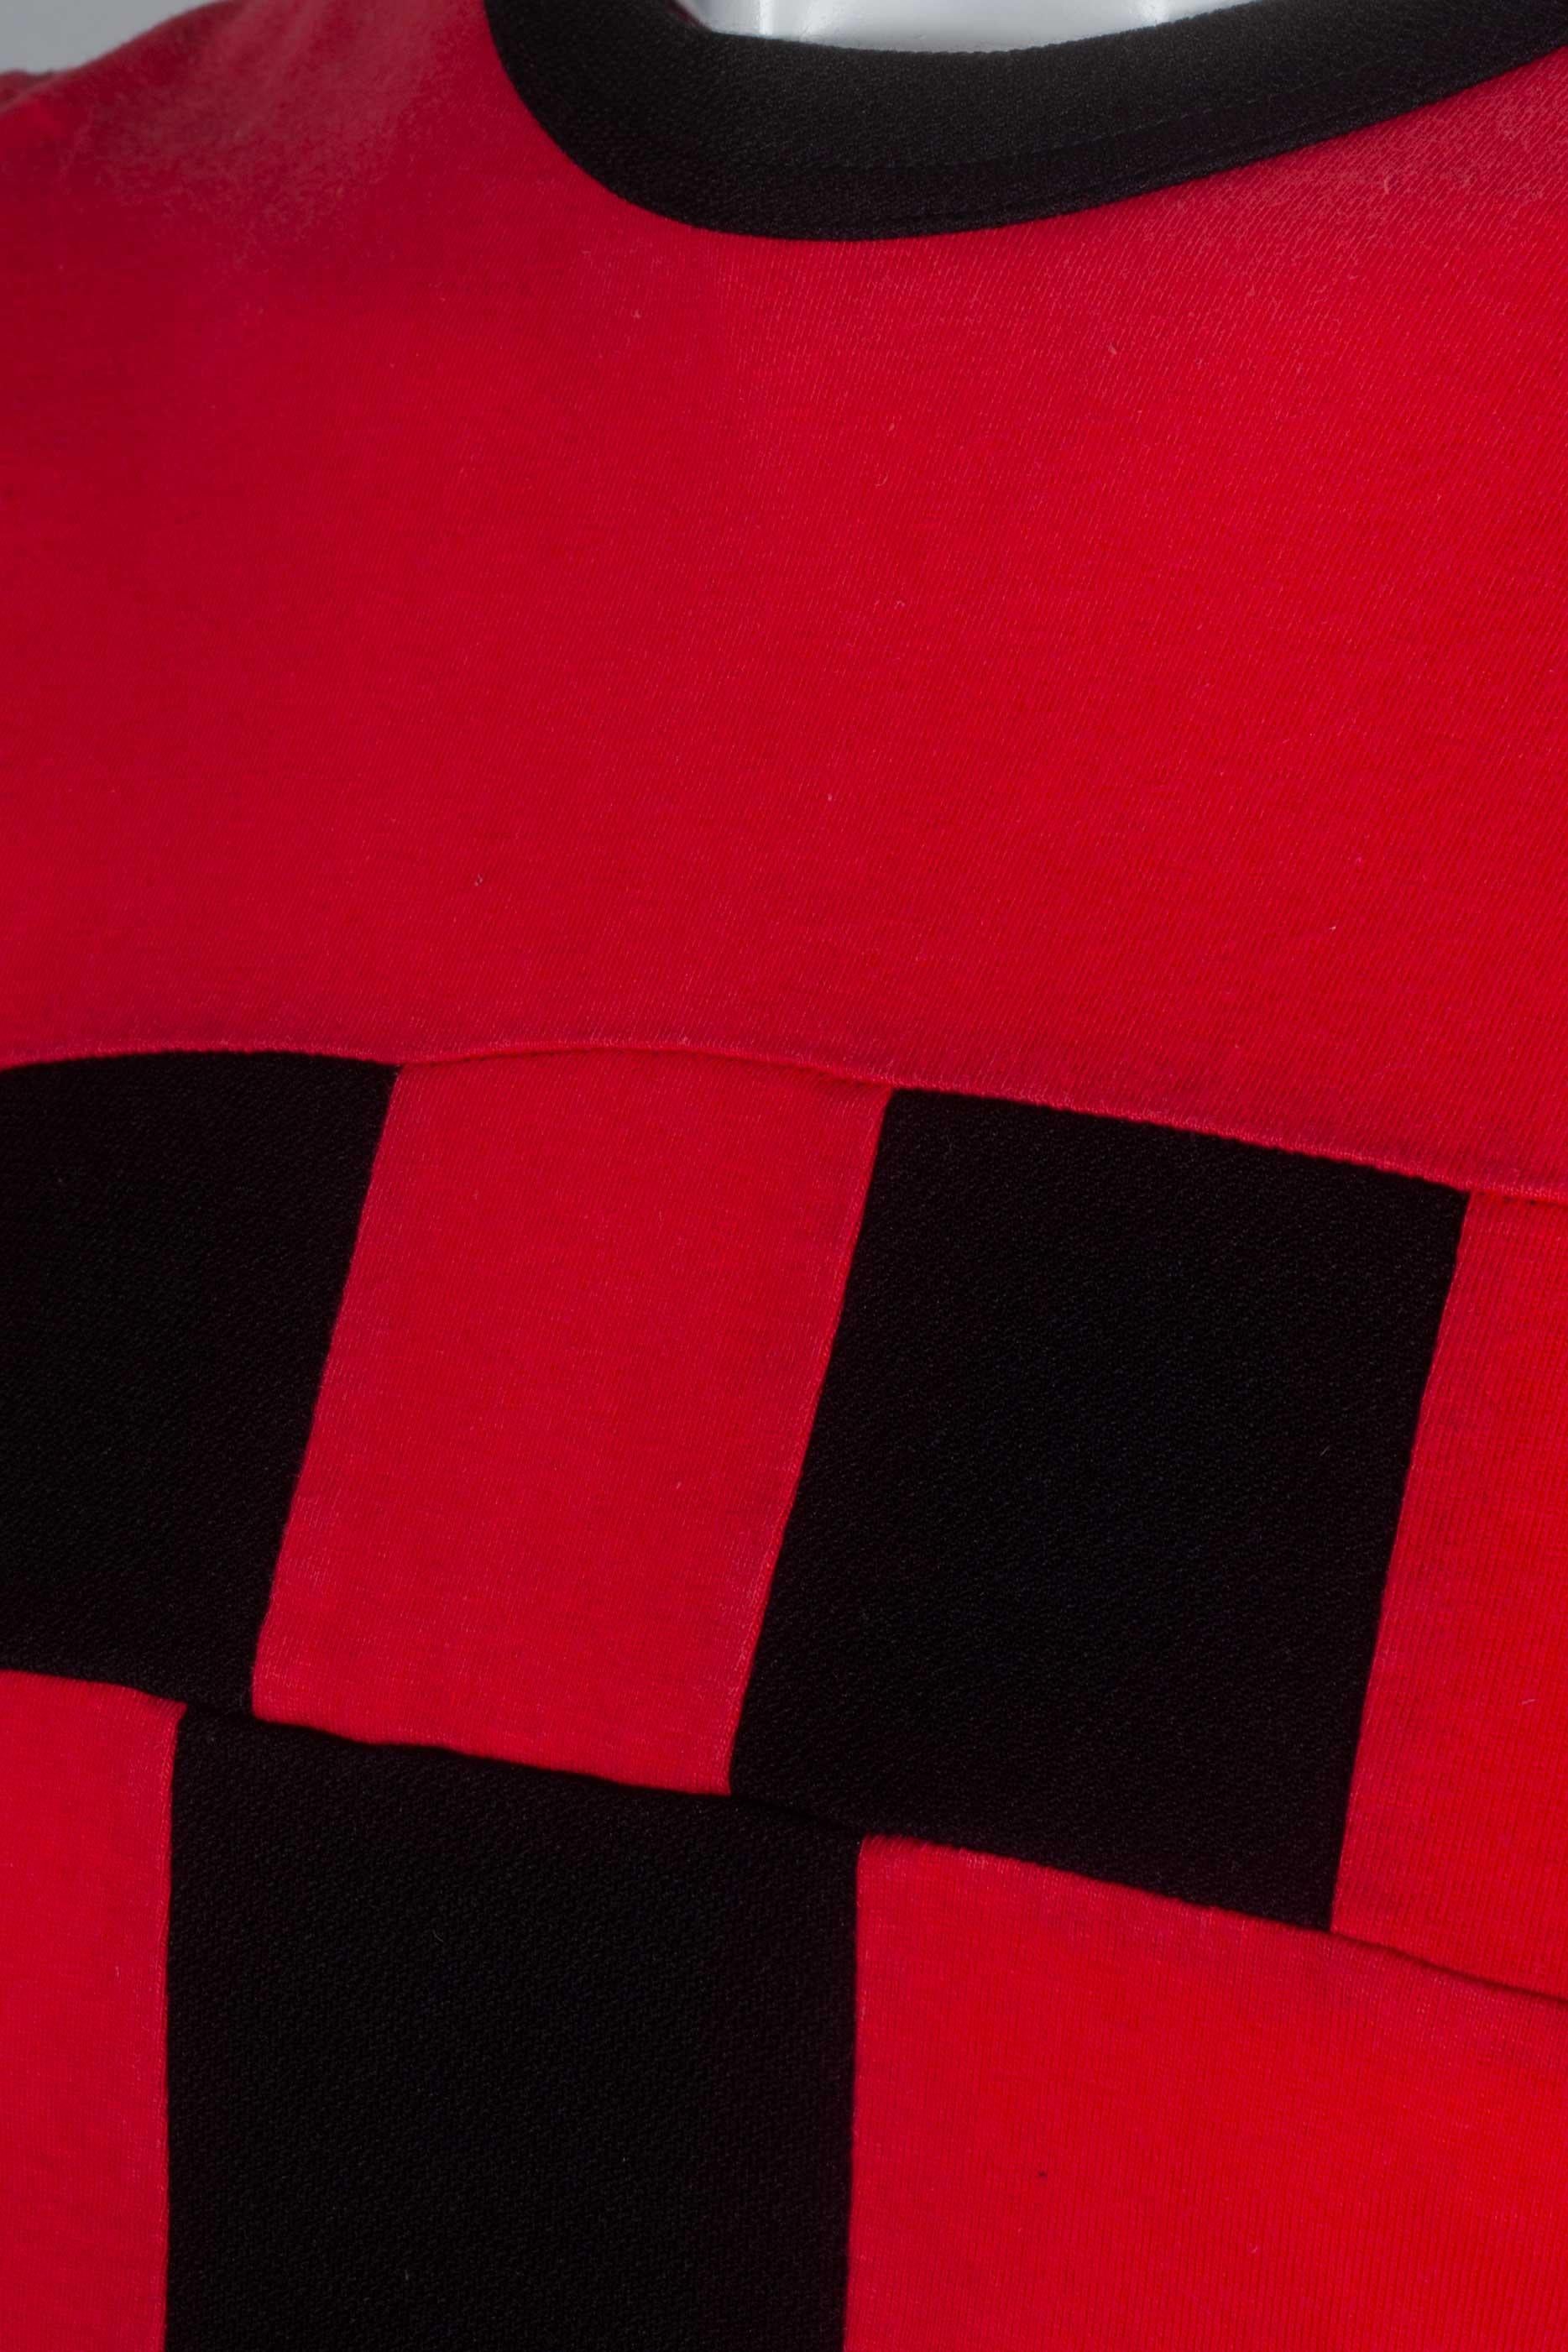 Women's or Men's Comme des Garçons Homme Plus Red T-shirt with Black Squares, 2003